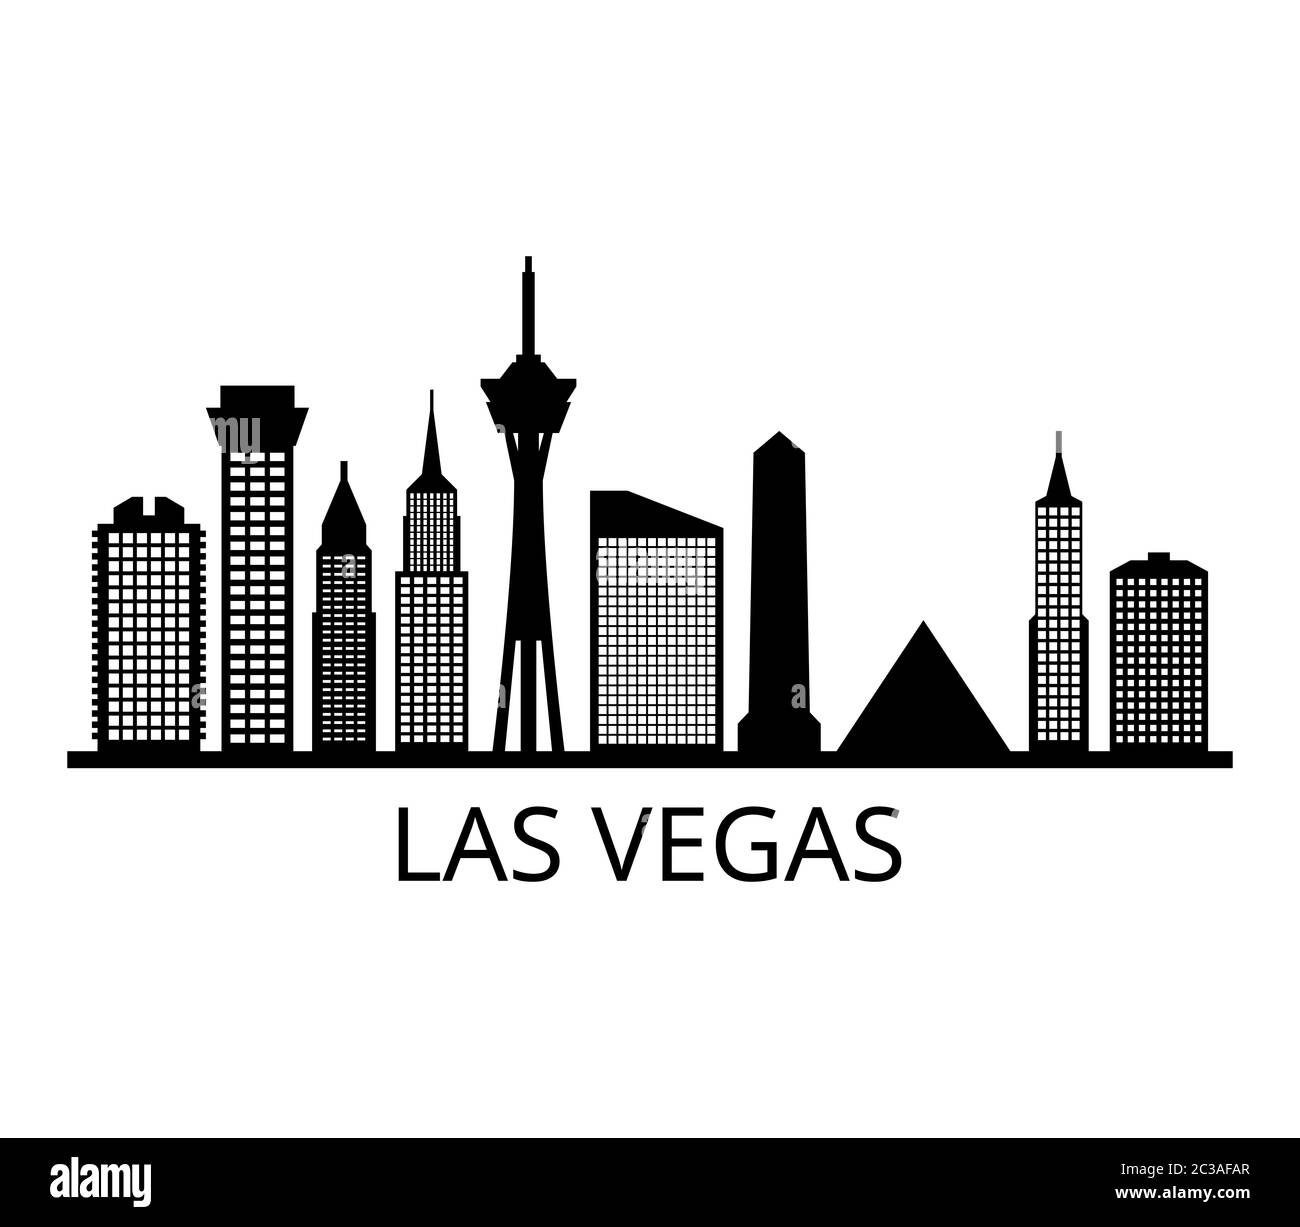 Las Vegas skyline Stock Photo